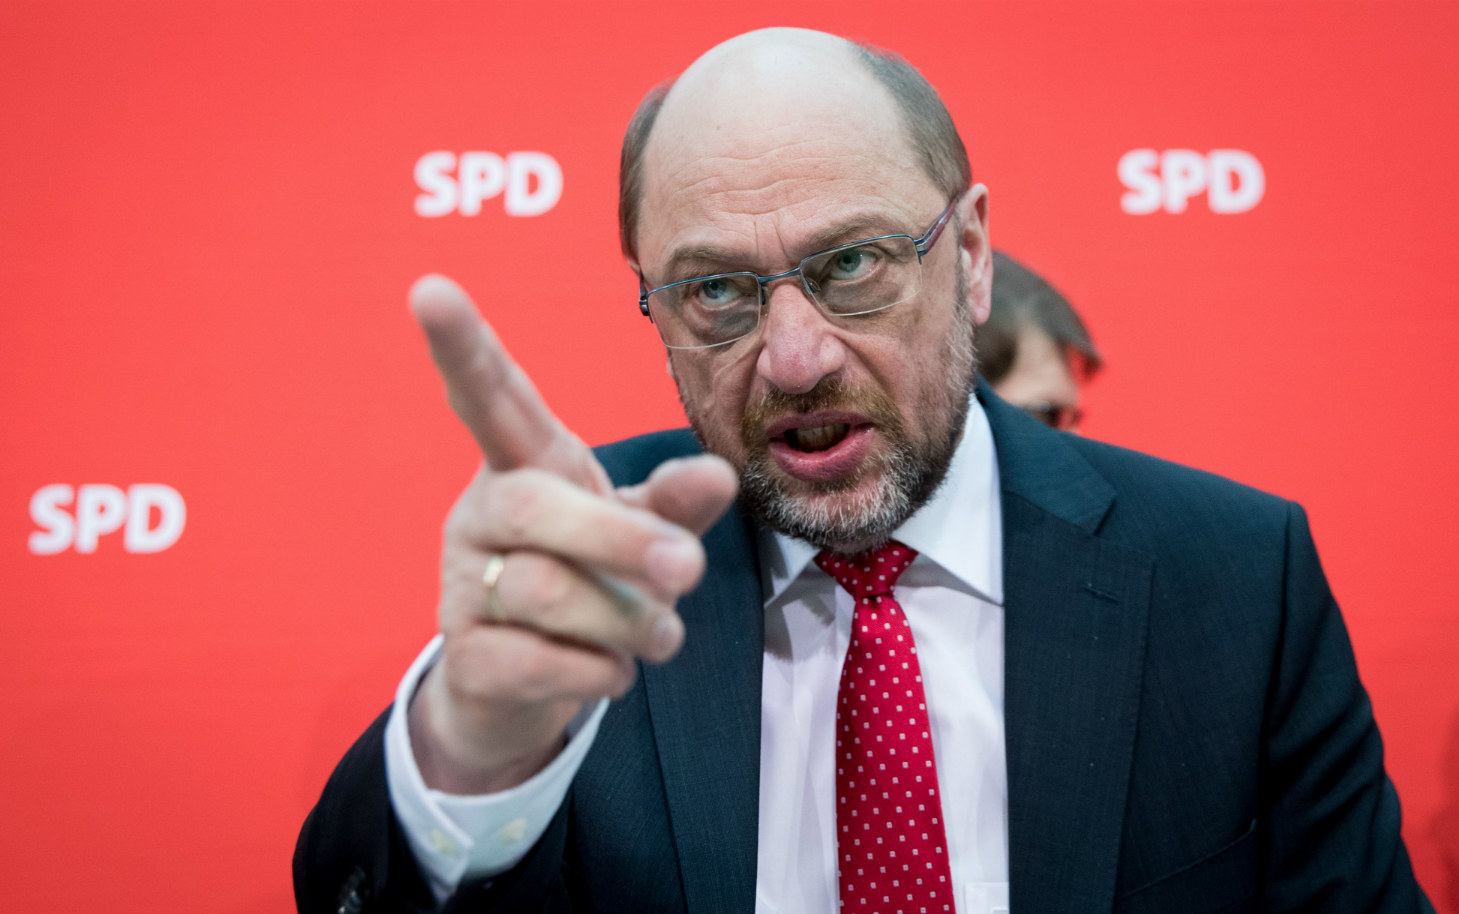 Elecciones alemanas: Schulz arremete contra Merkel y su «autocomplacencia» a dos días elecciones